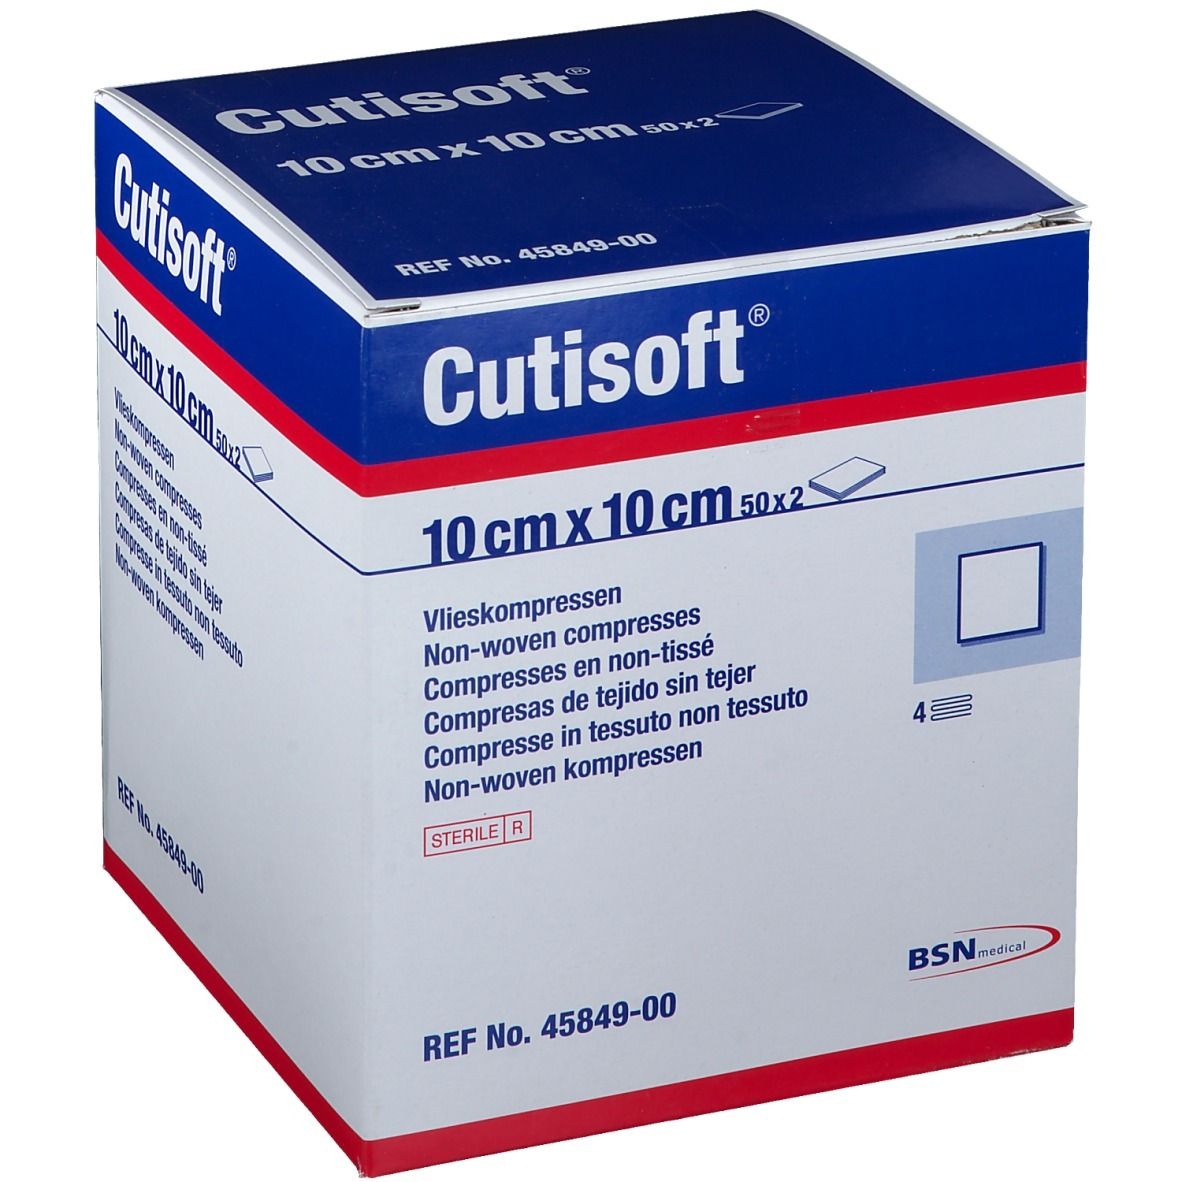 BSN Medical Cutisoft® Vlieskompressen steril 10 x 10 cm